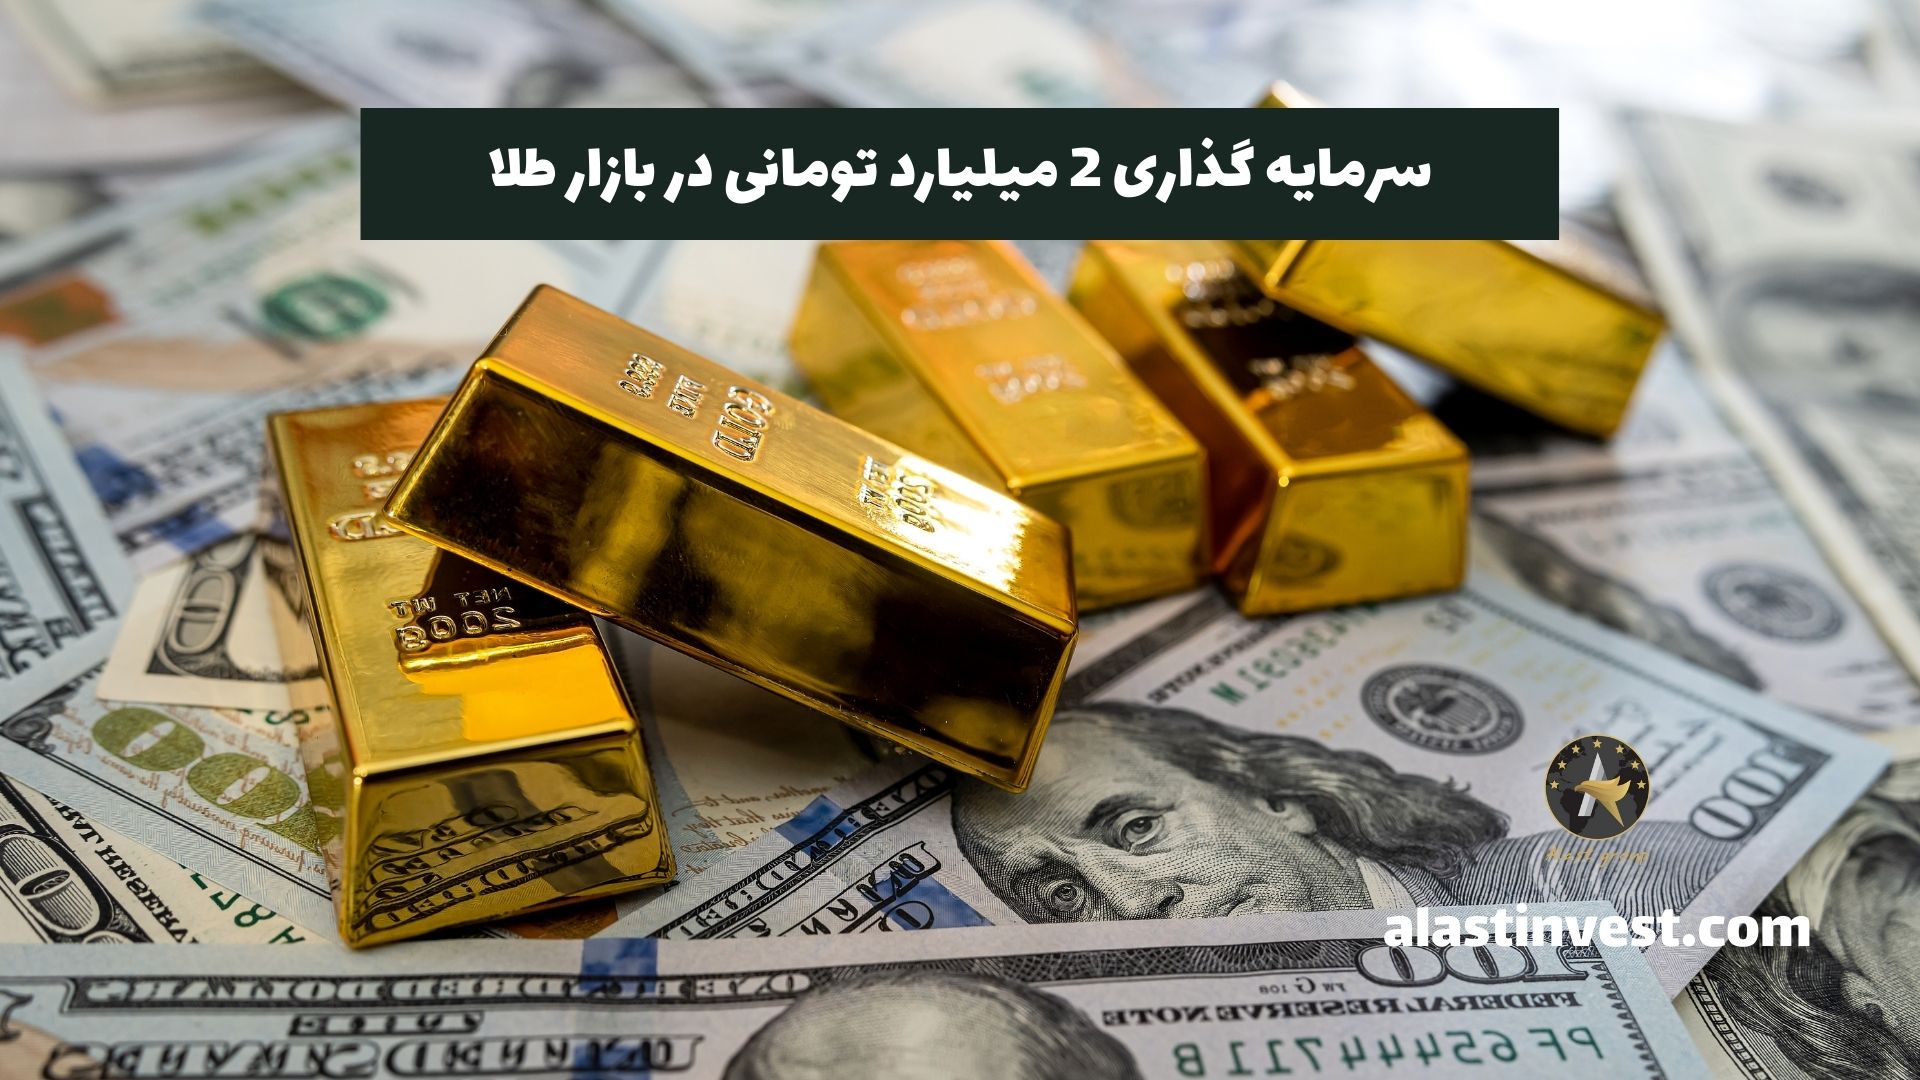 سرمایه گذاری 2 میلیارد تومانی در بازار طلا